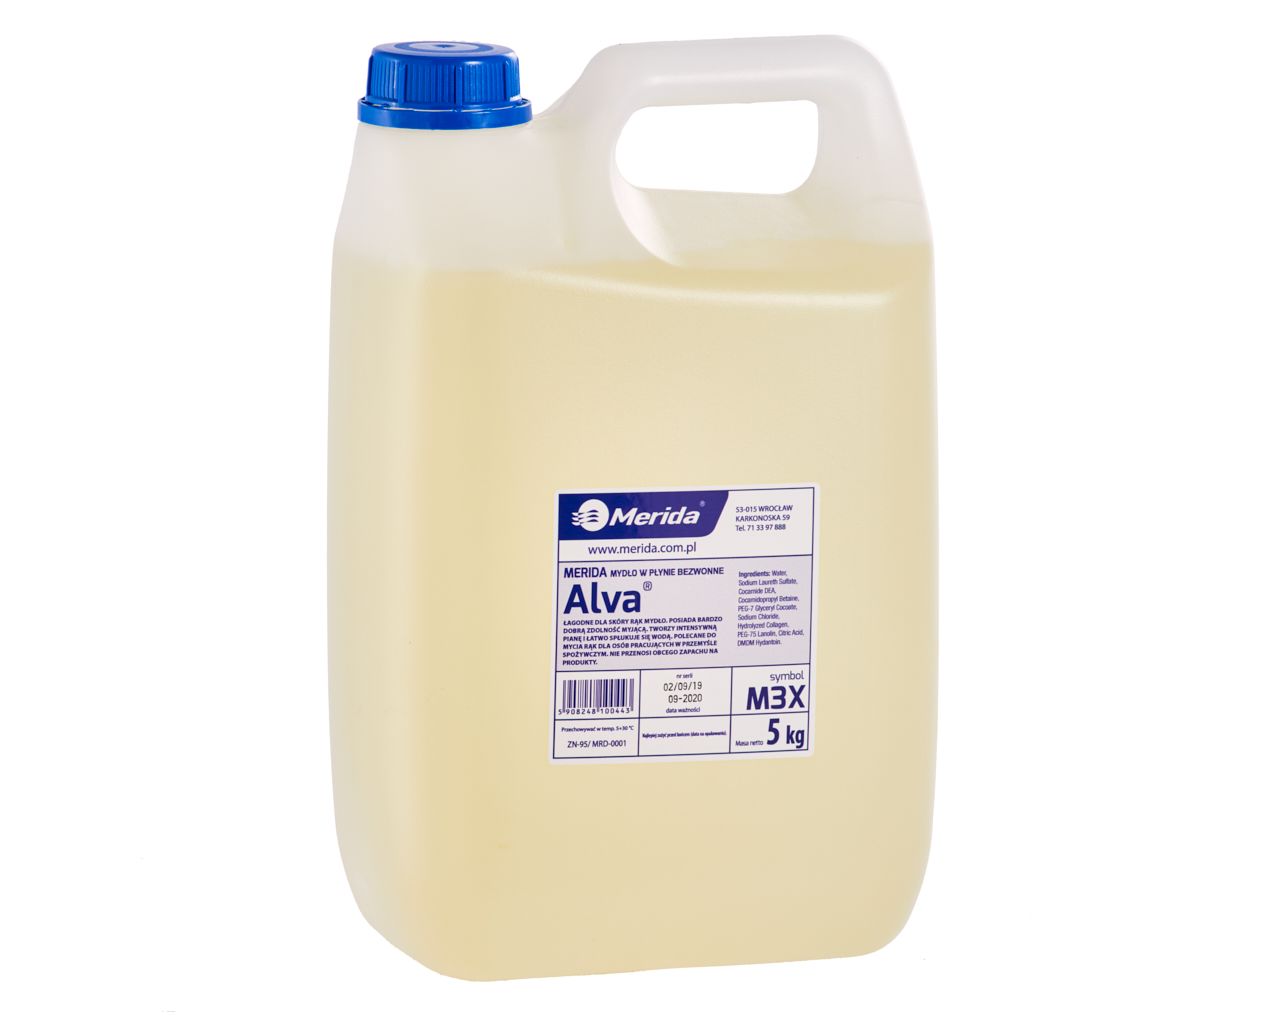 MERIDA ALVA - scentless, disinfecting liquid soap 5 kg